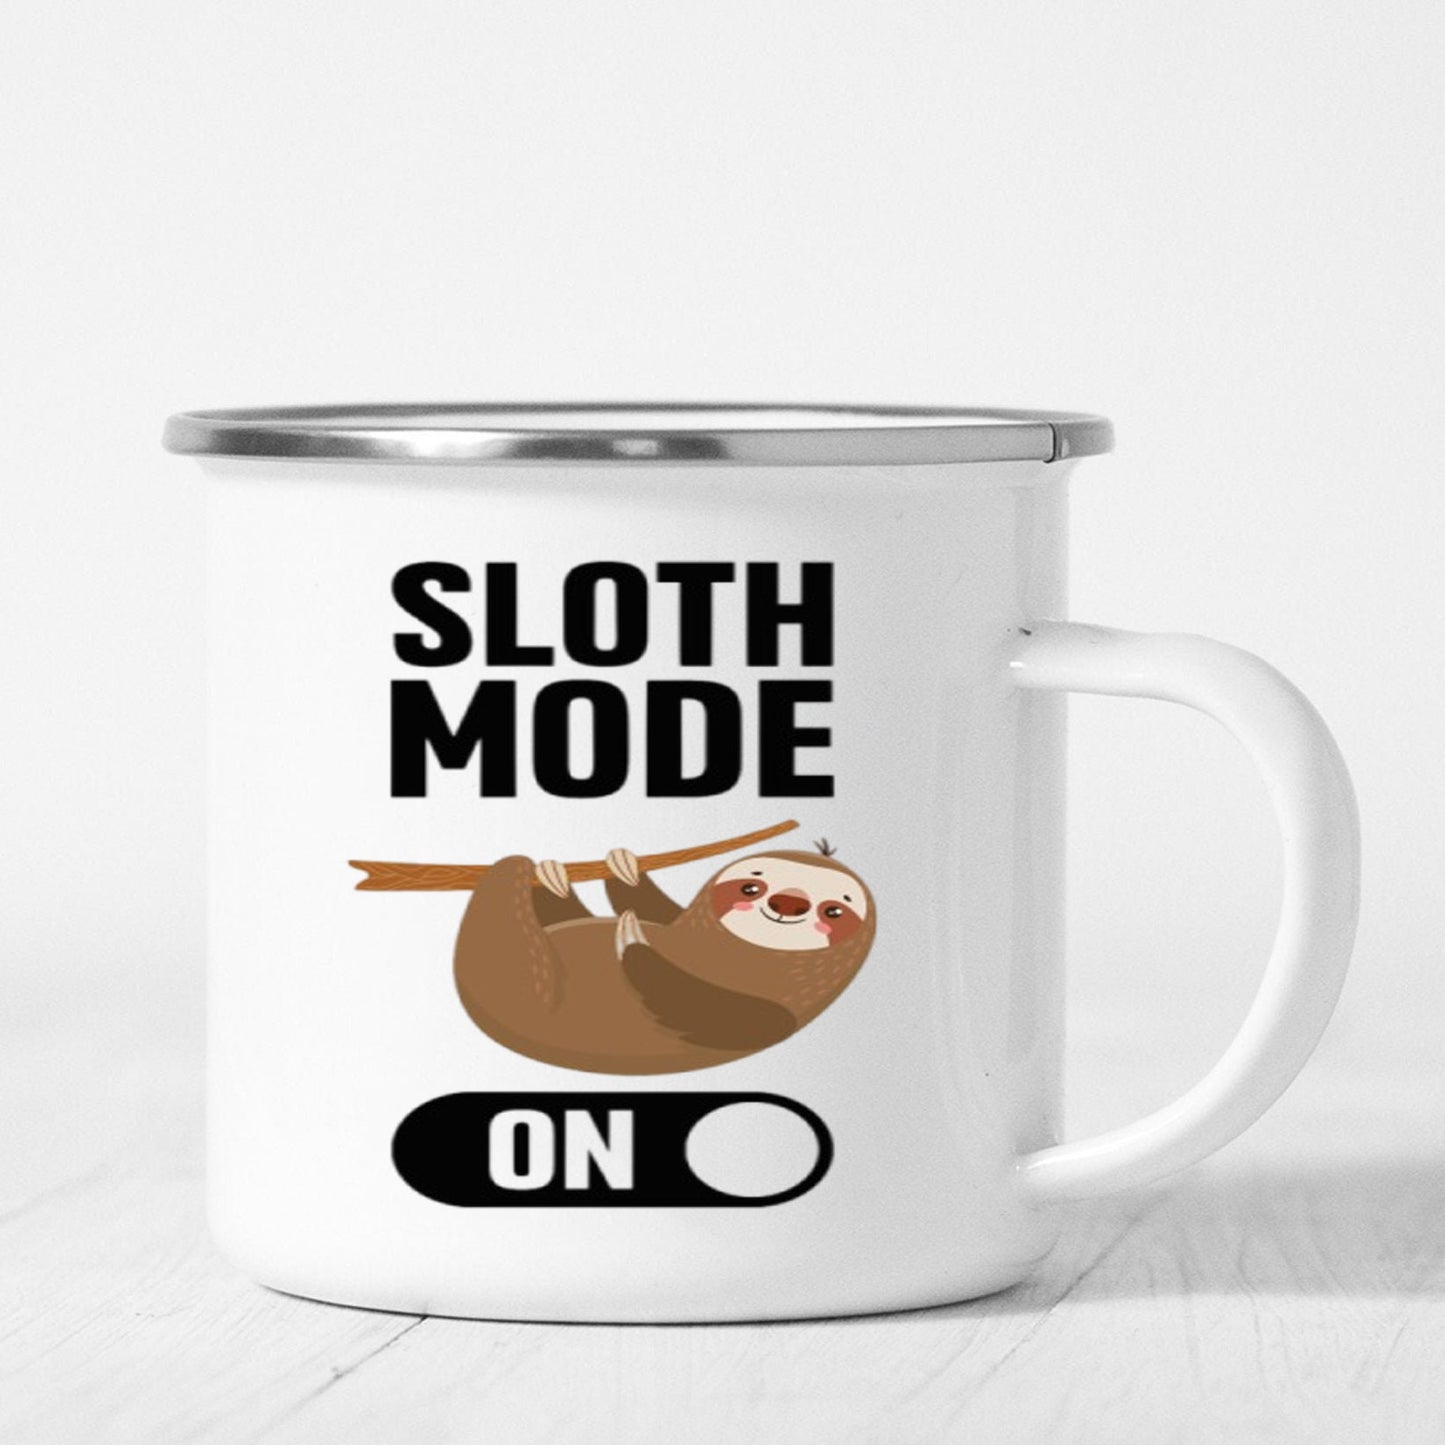 Sloth Mode On Mug